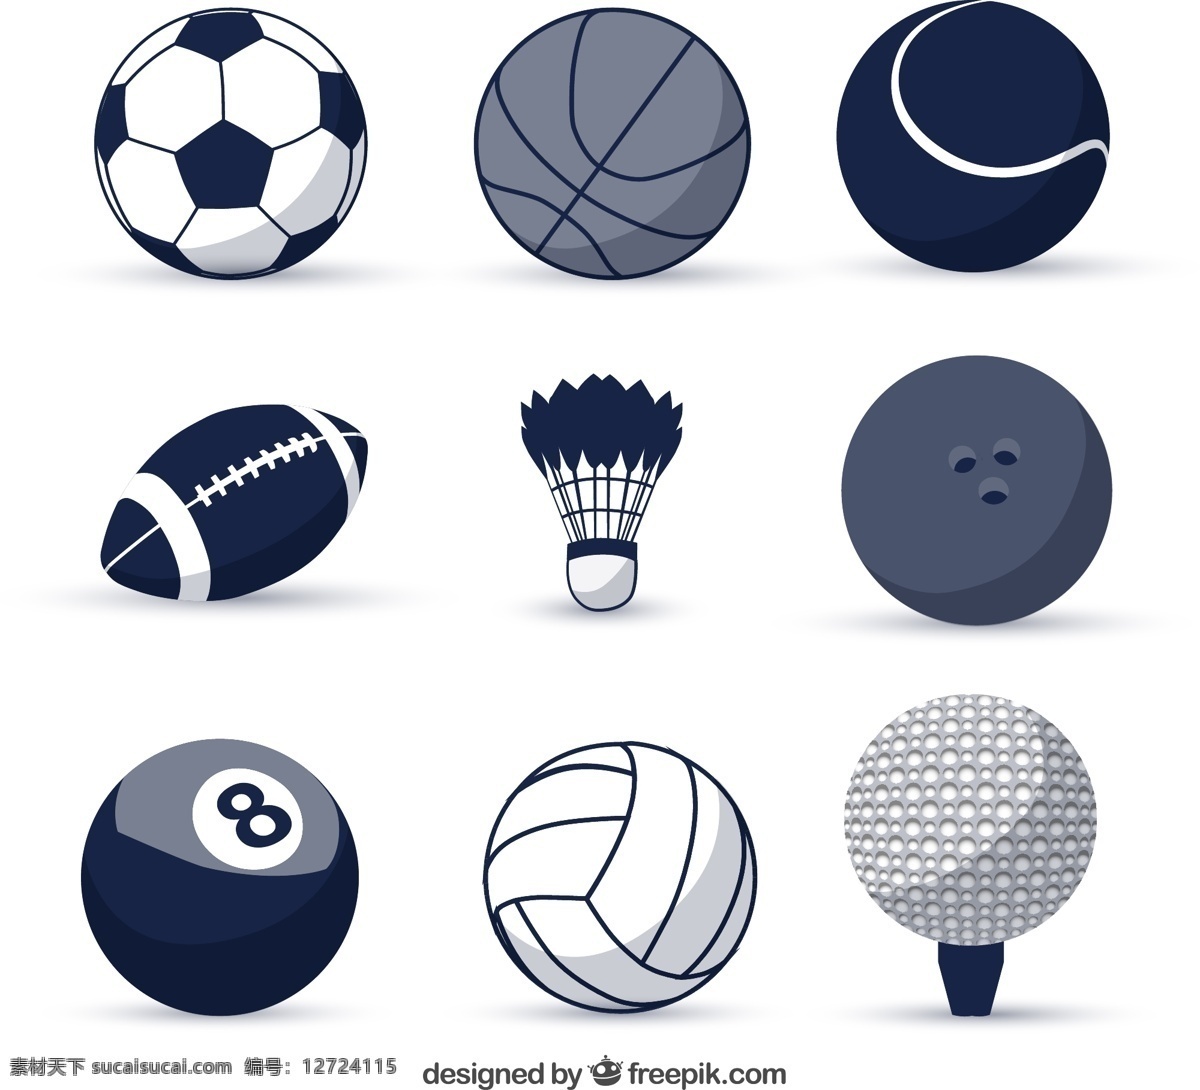 款 球类 图标 矢量 球类图标 球类ai 球类矢量 源文件 足球 篮球 排球 羽毛球 棒球 高尔夫 体育 运动 运动矢量图 文化艺术 体育运动